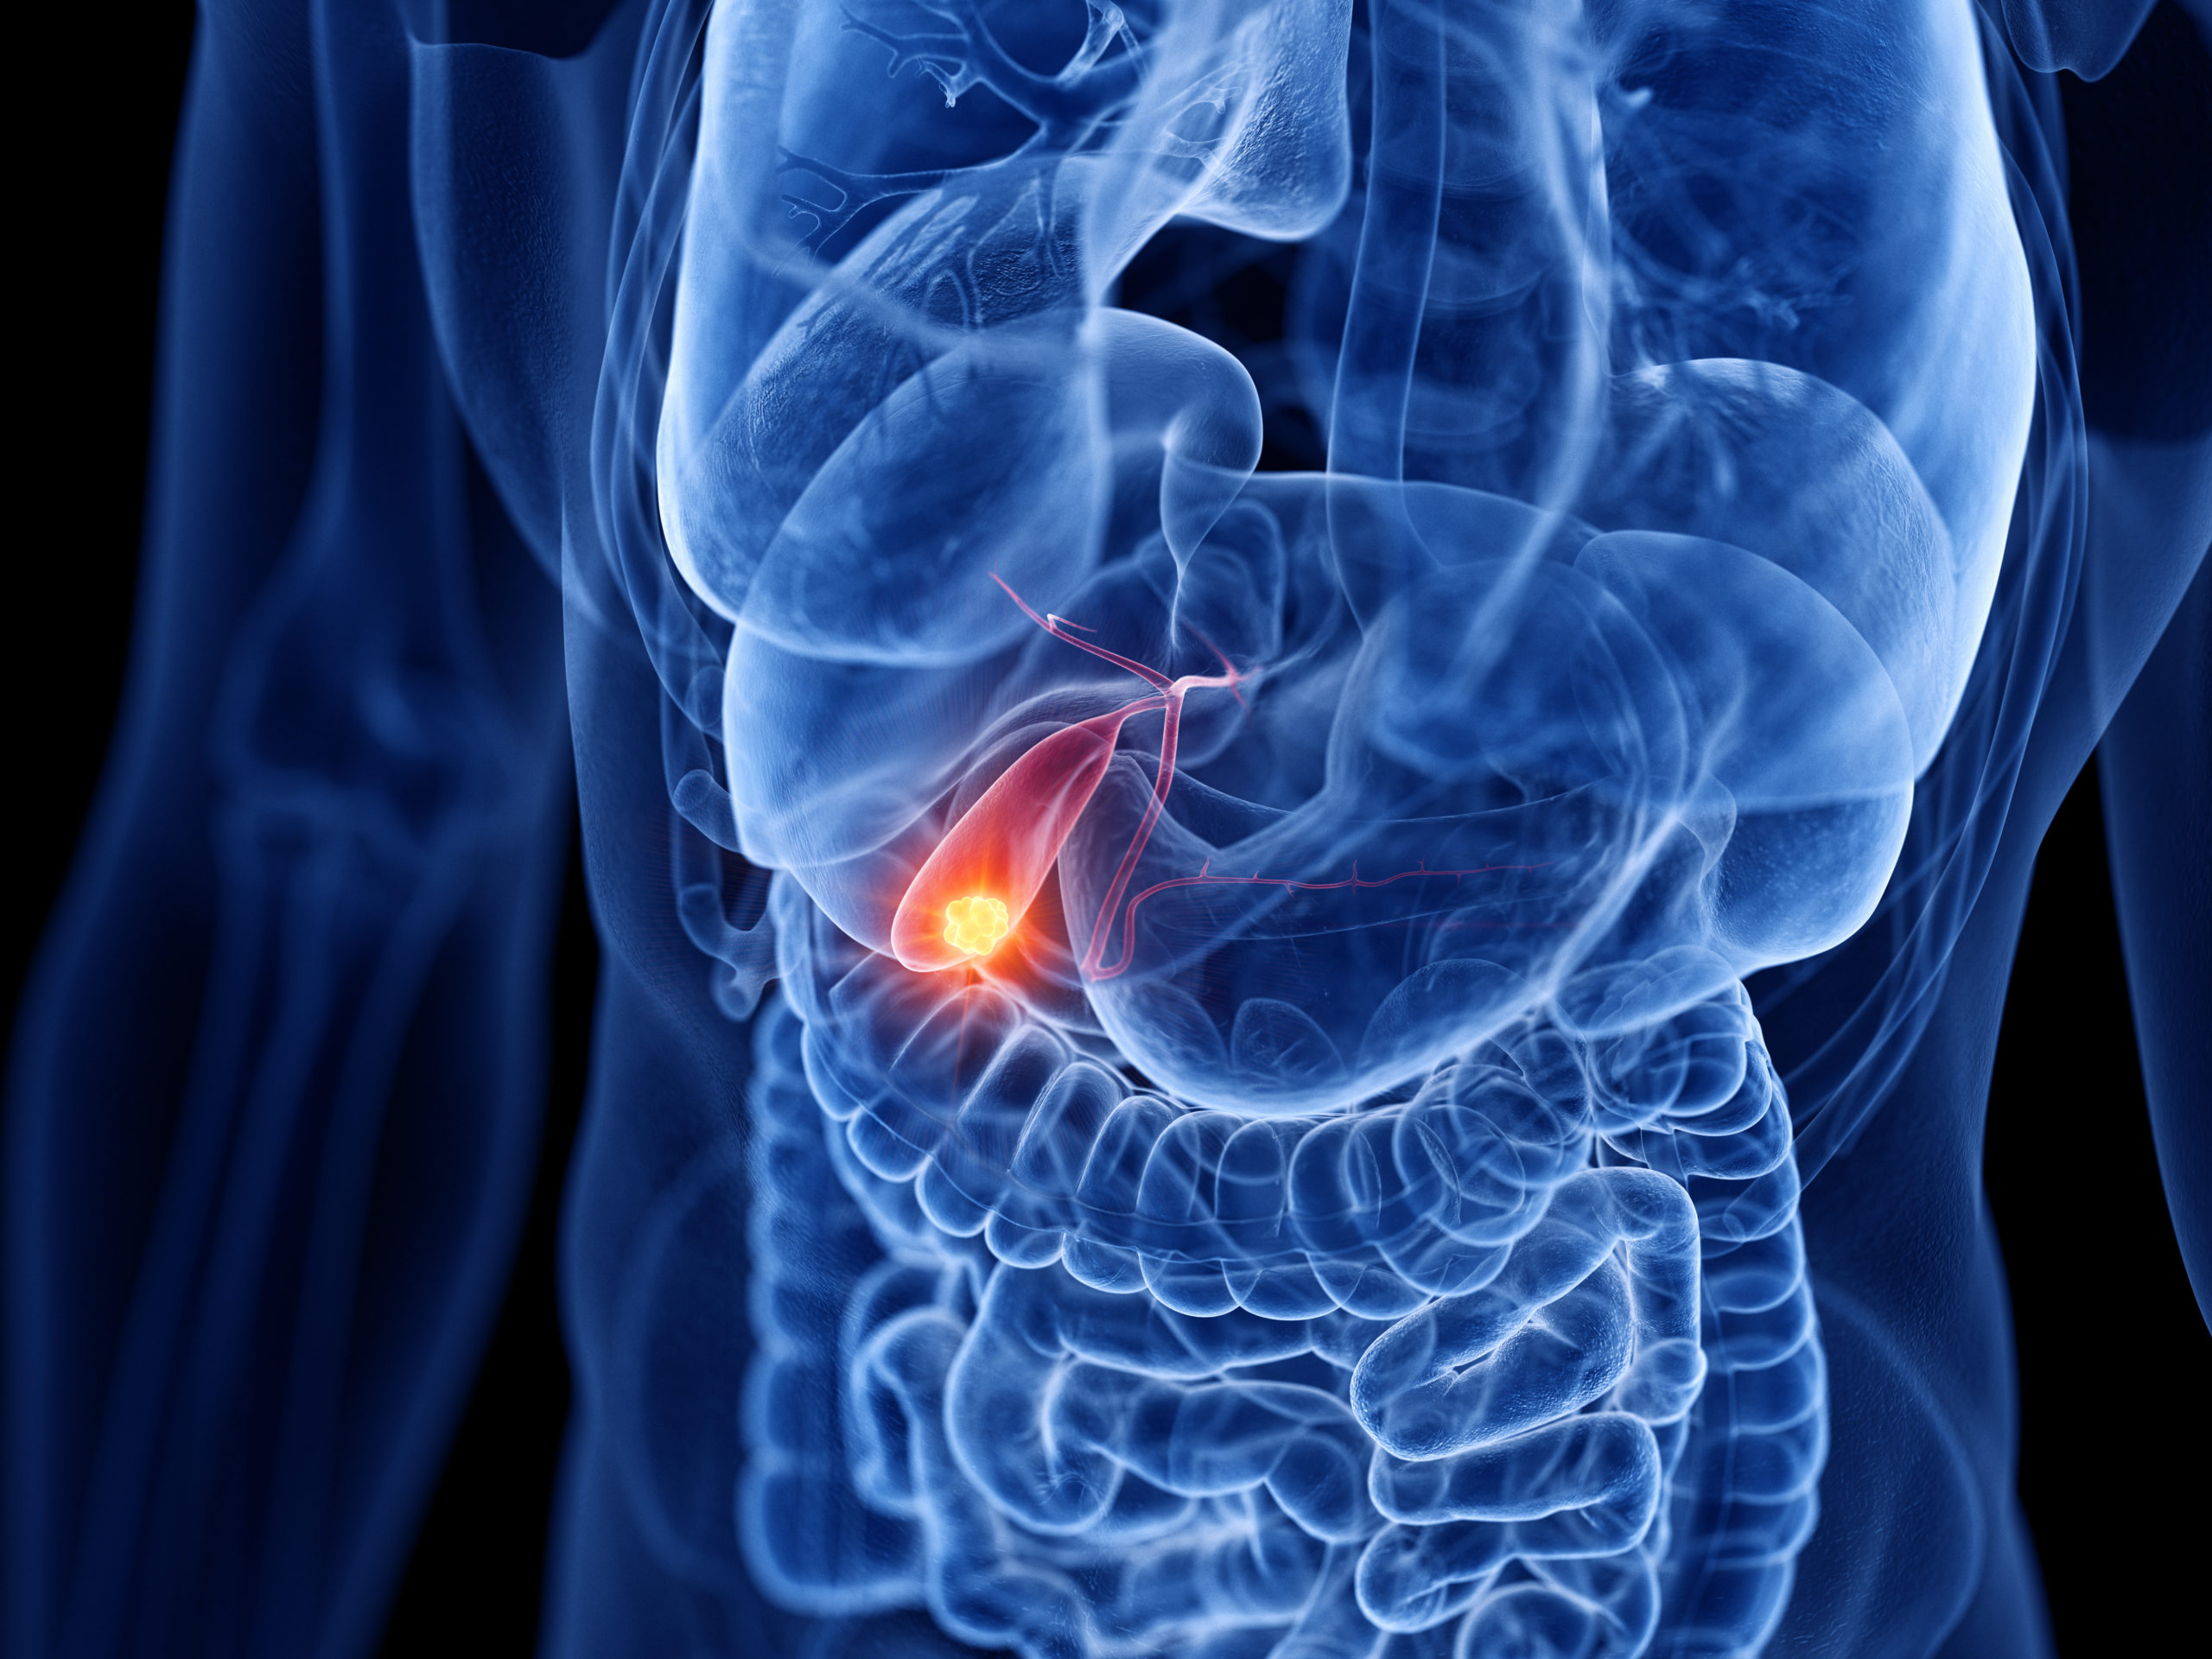 Understanding Gallbladder Disease